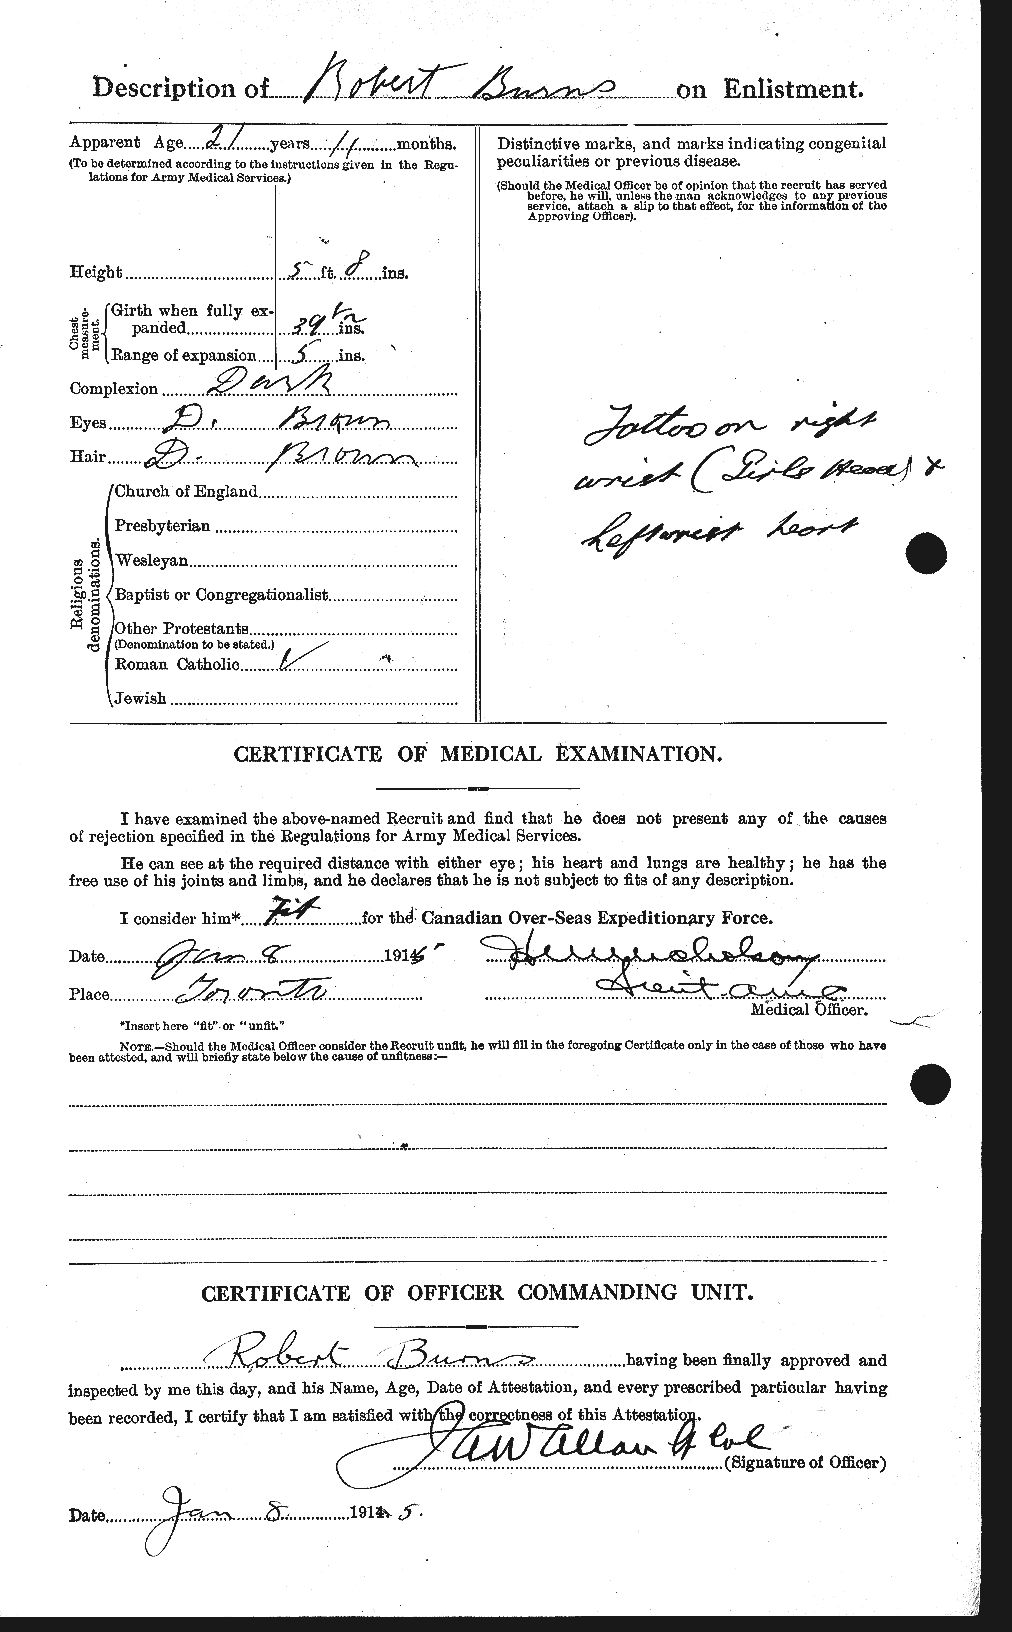 Dossiers du Personnel de la Première Guerre mondiale - CEC 271718b